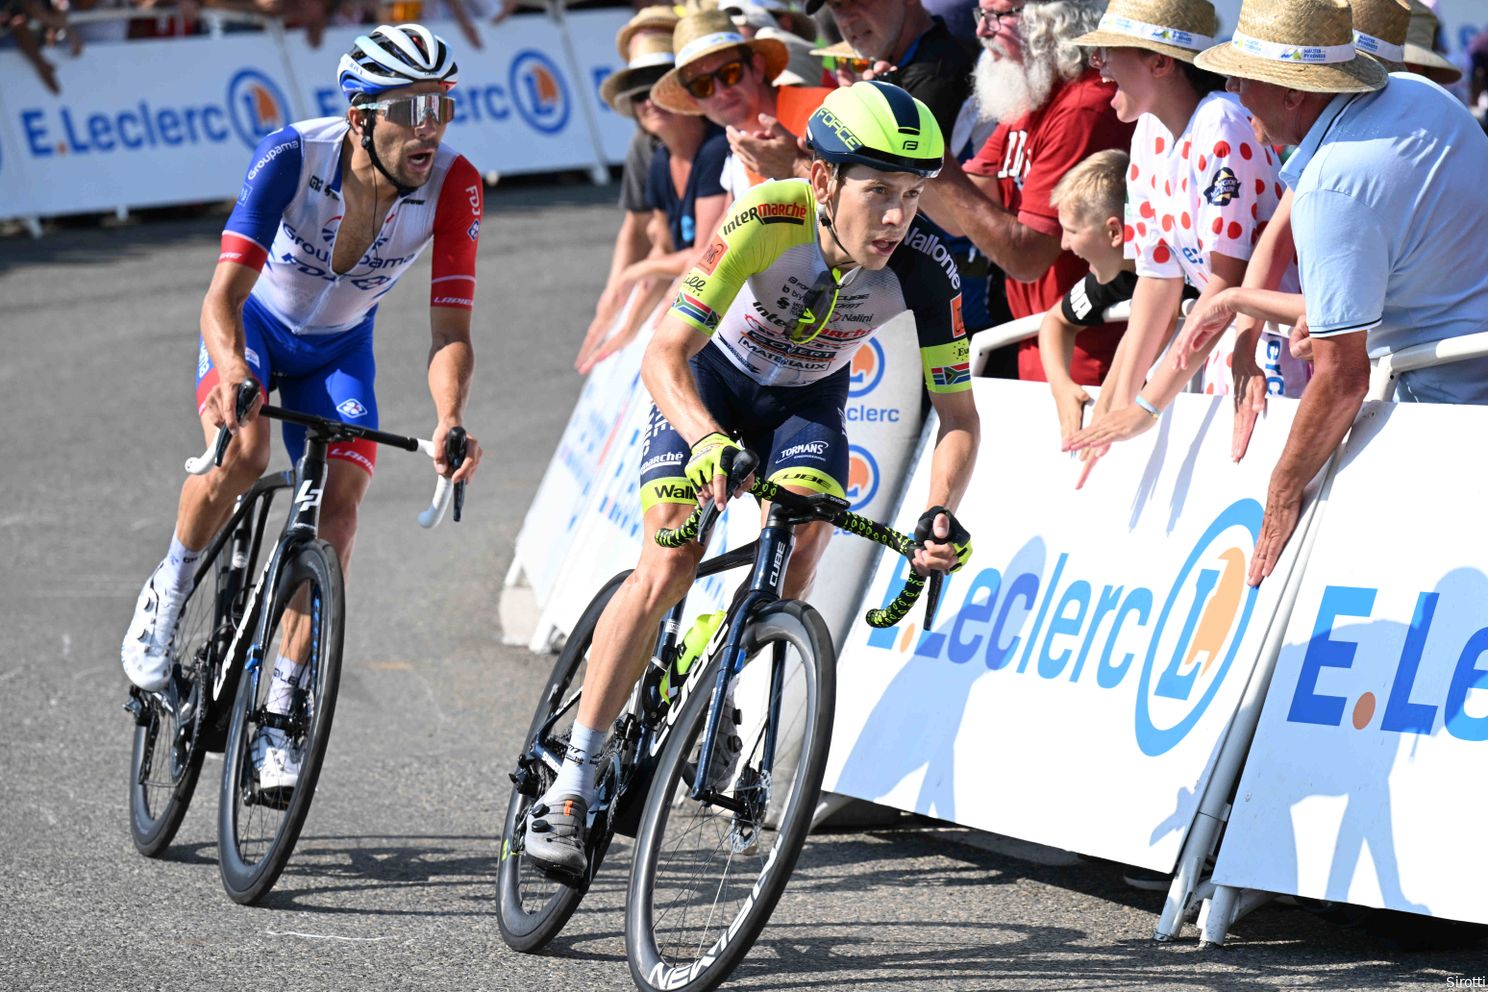 Tourploegen op rapport: wie scoorden de (on)voldoendes in de Ronde van Frankrijk?